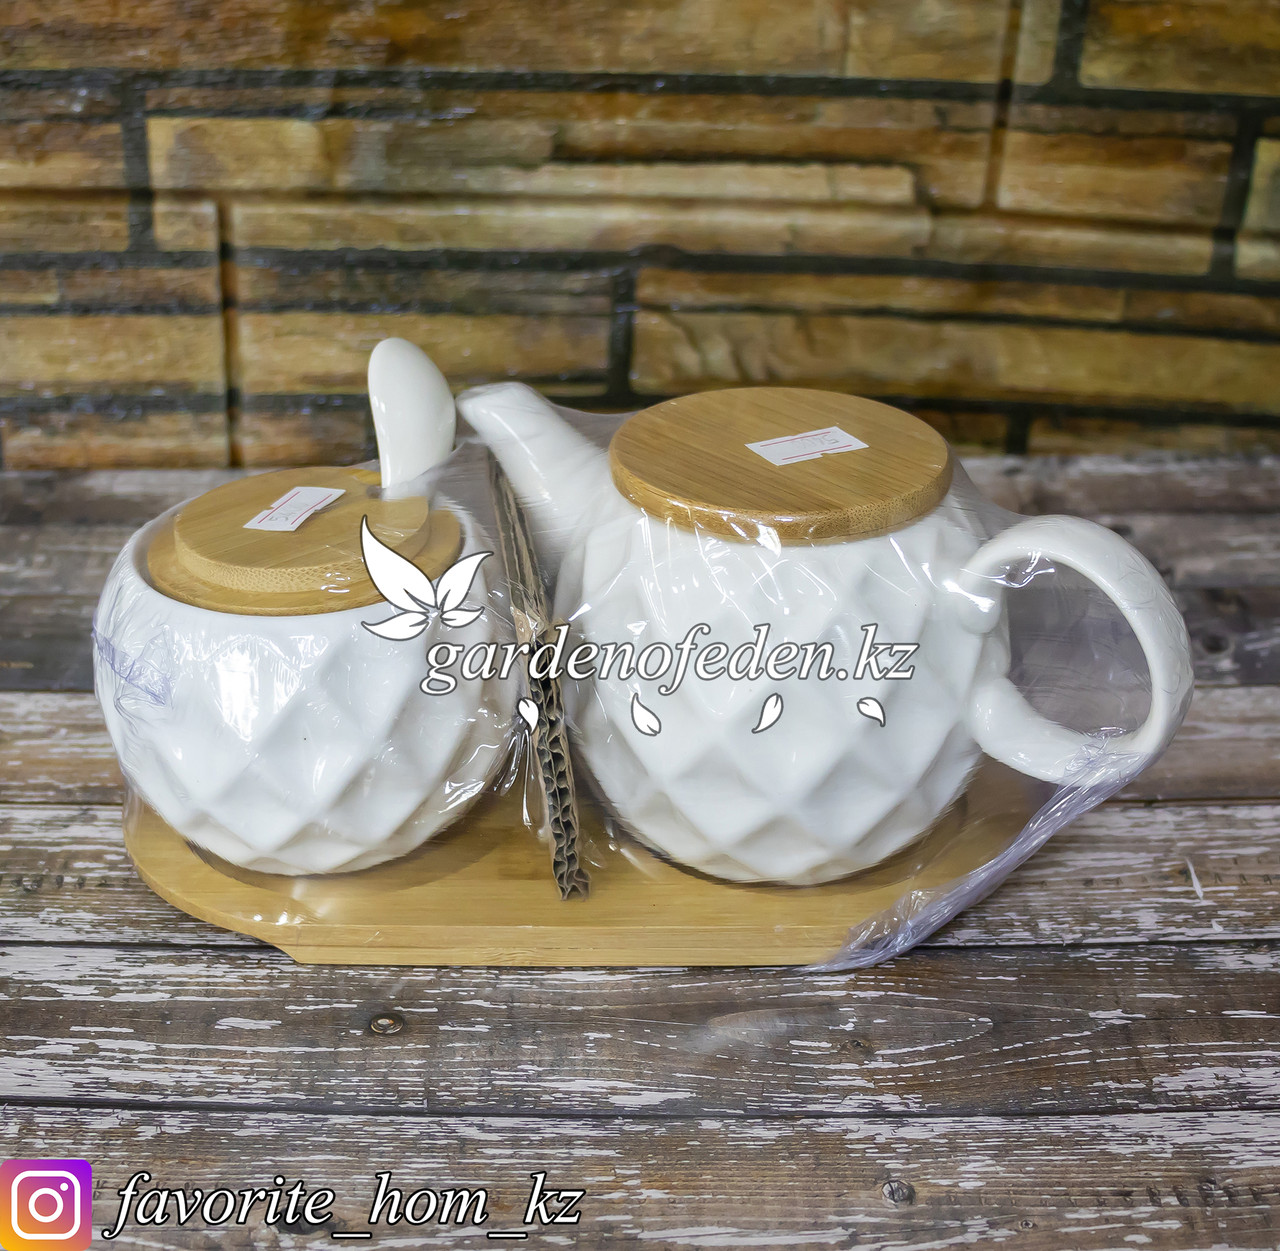 Чайный набор. Заварочный чайник и сахарница с ложечкой. Материал: Керамика. Цвет: Белый/Натуральный.